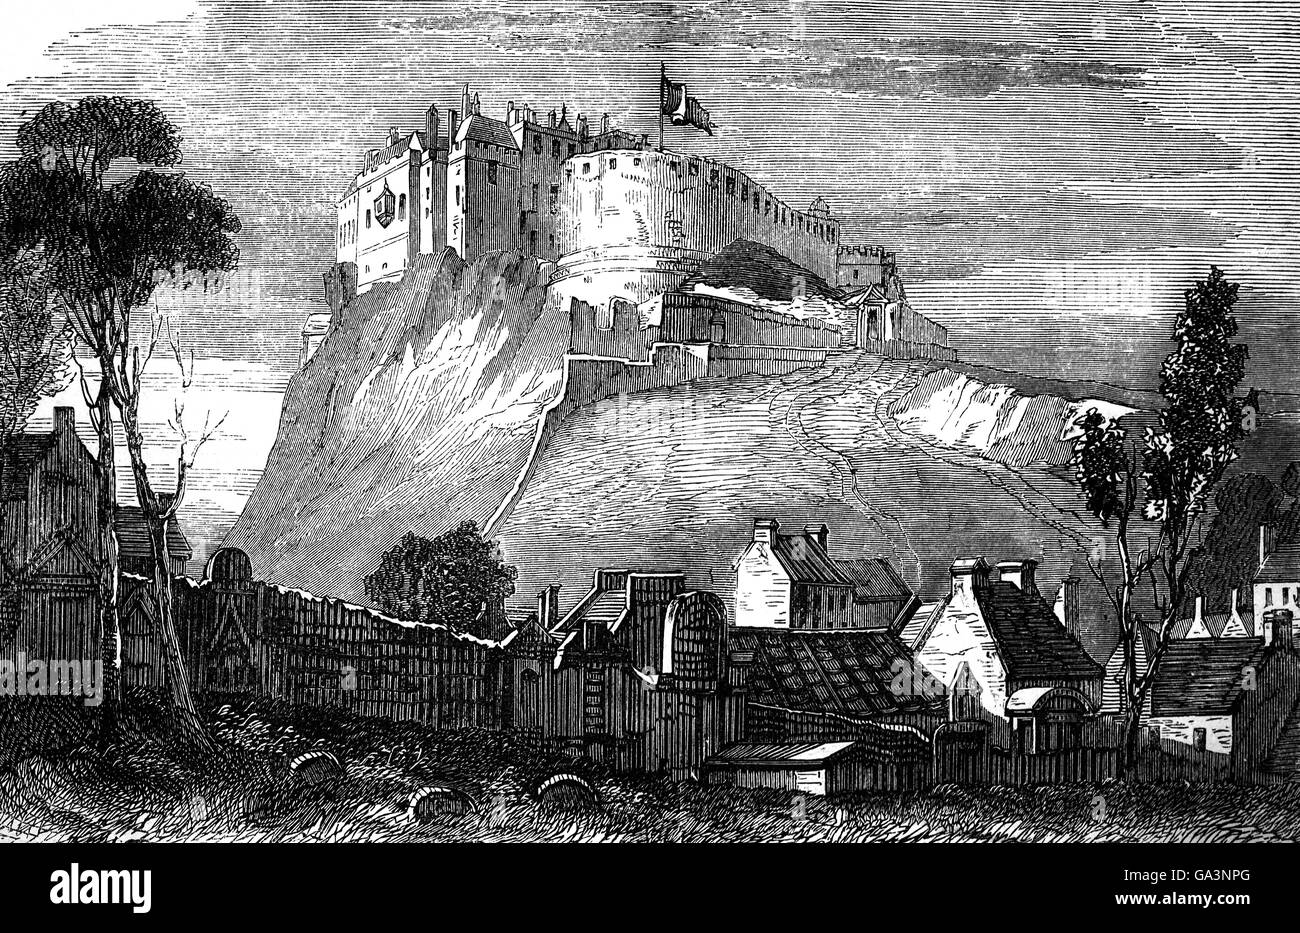 Le Château d'Édimbourg est une forteresse historique qui domine les toits de la ville d'Édimbourg, en Écosse, à partir de sa position sur le rocher du château. Au 17ème siècle, il a été principalement utilisé comme caserne militaire avec une importante garnison. Banque D'Images